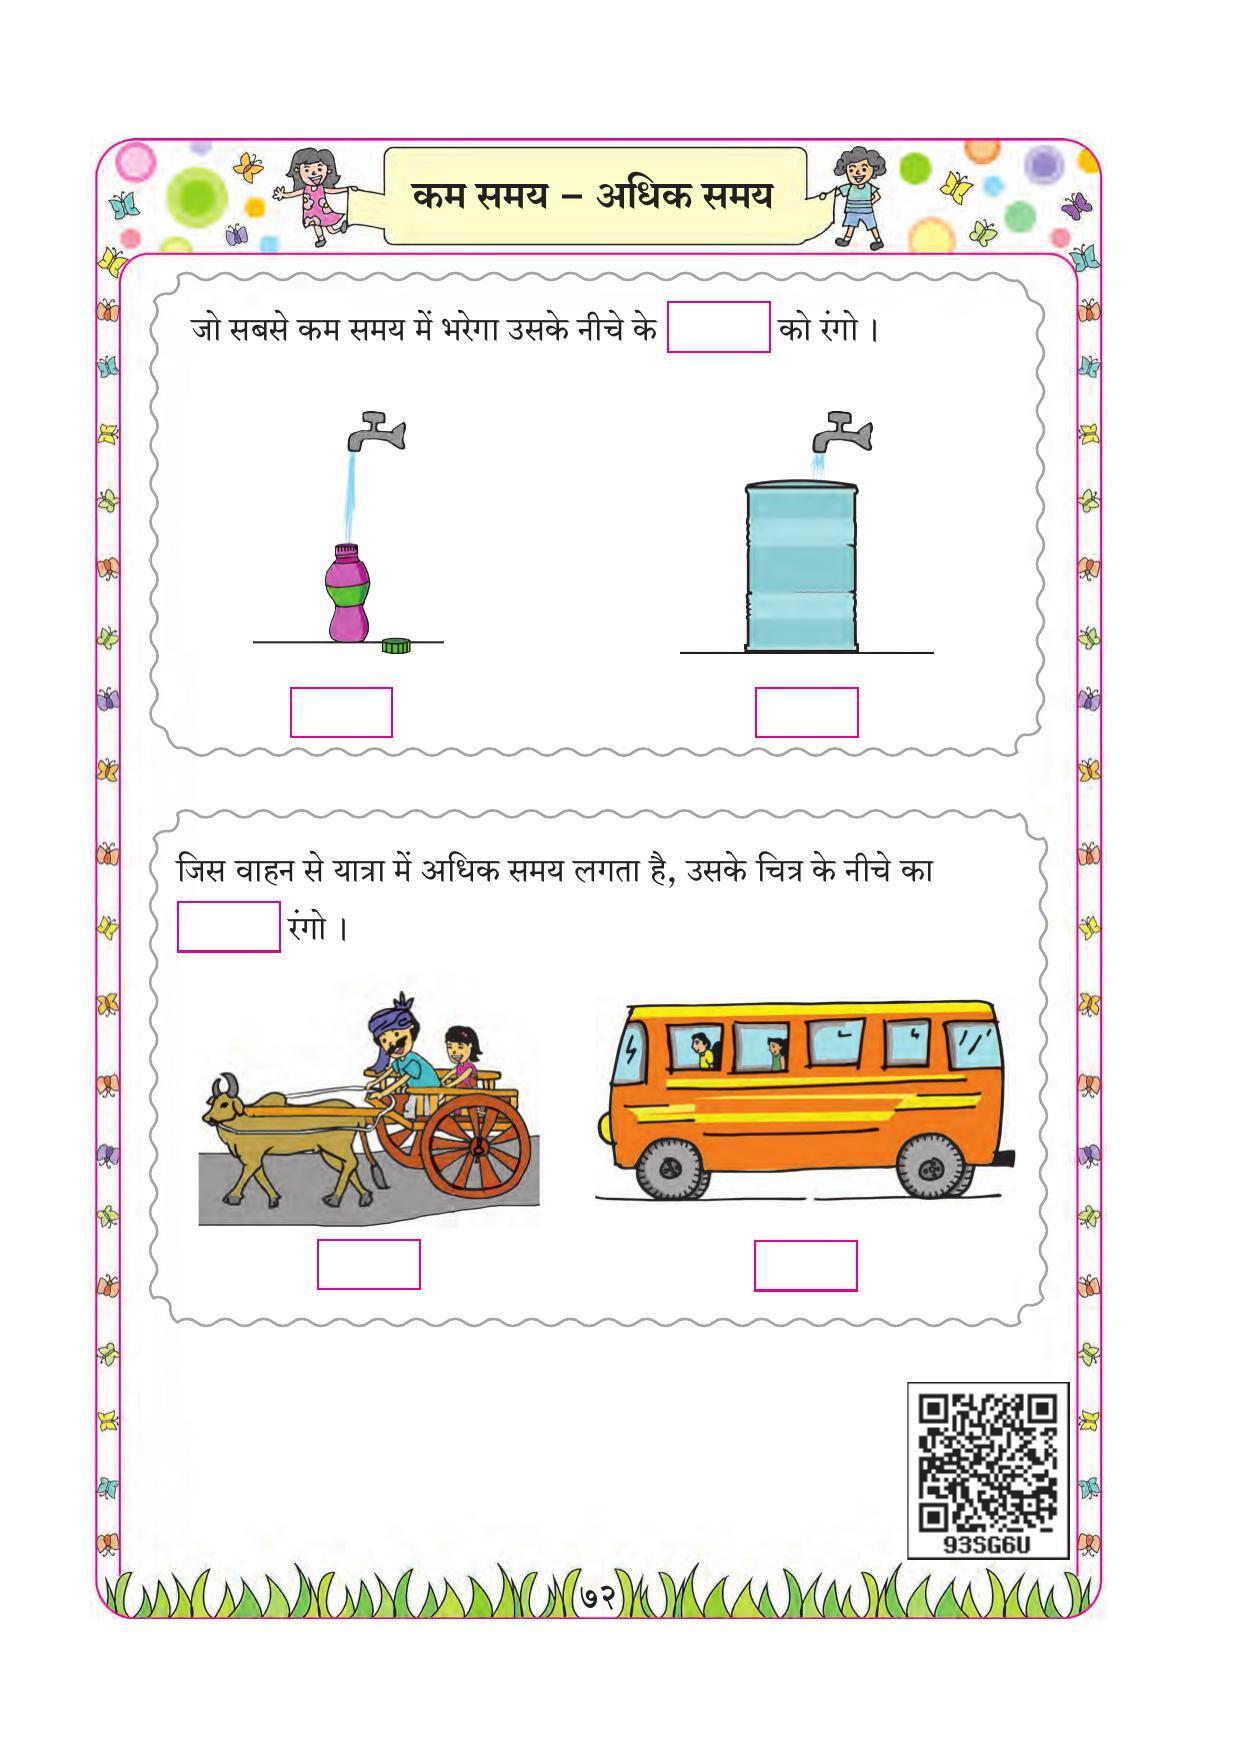 Maharashtra Board Class 1 Maths (Hindi Medium) Textbook - Page 82